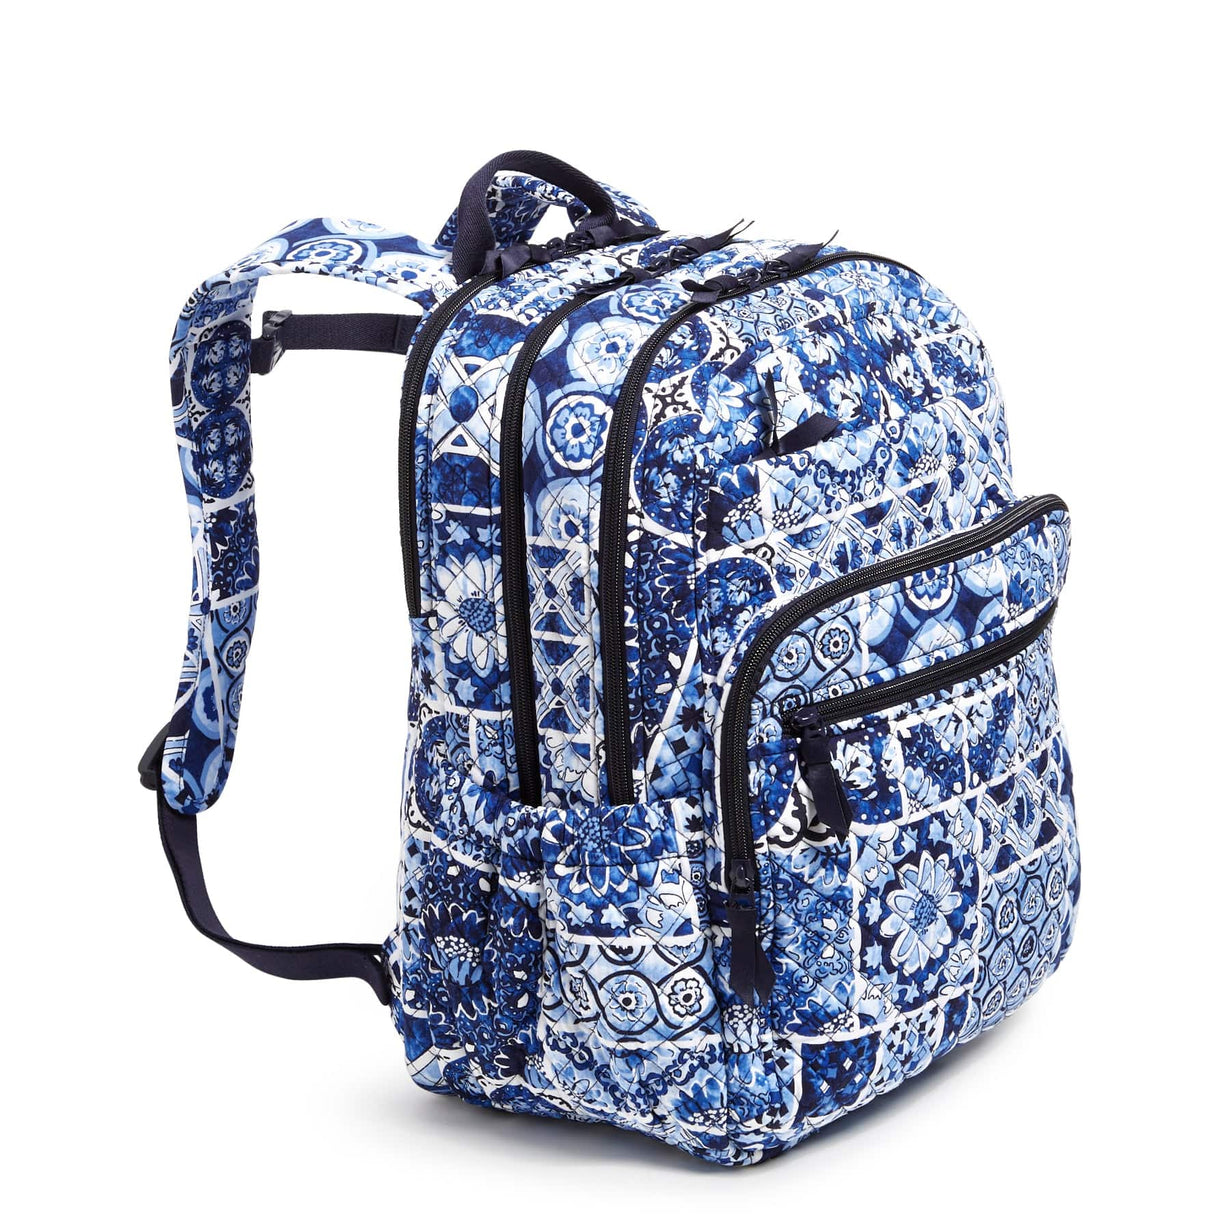 NWT VERA BRADLEY XL CAMPUS BACKPACK  Campus backpack, Vera bradley, Laptop  sleeves